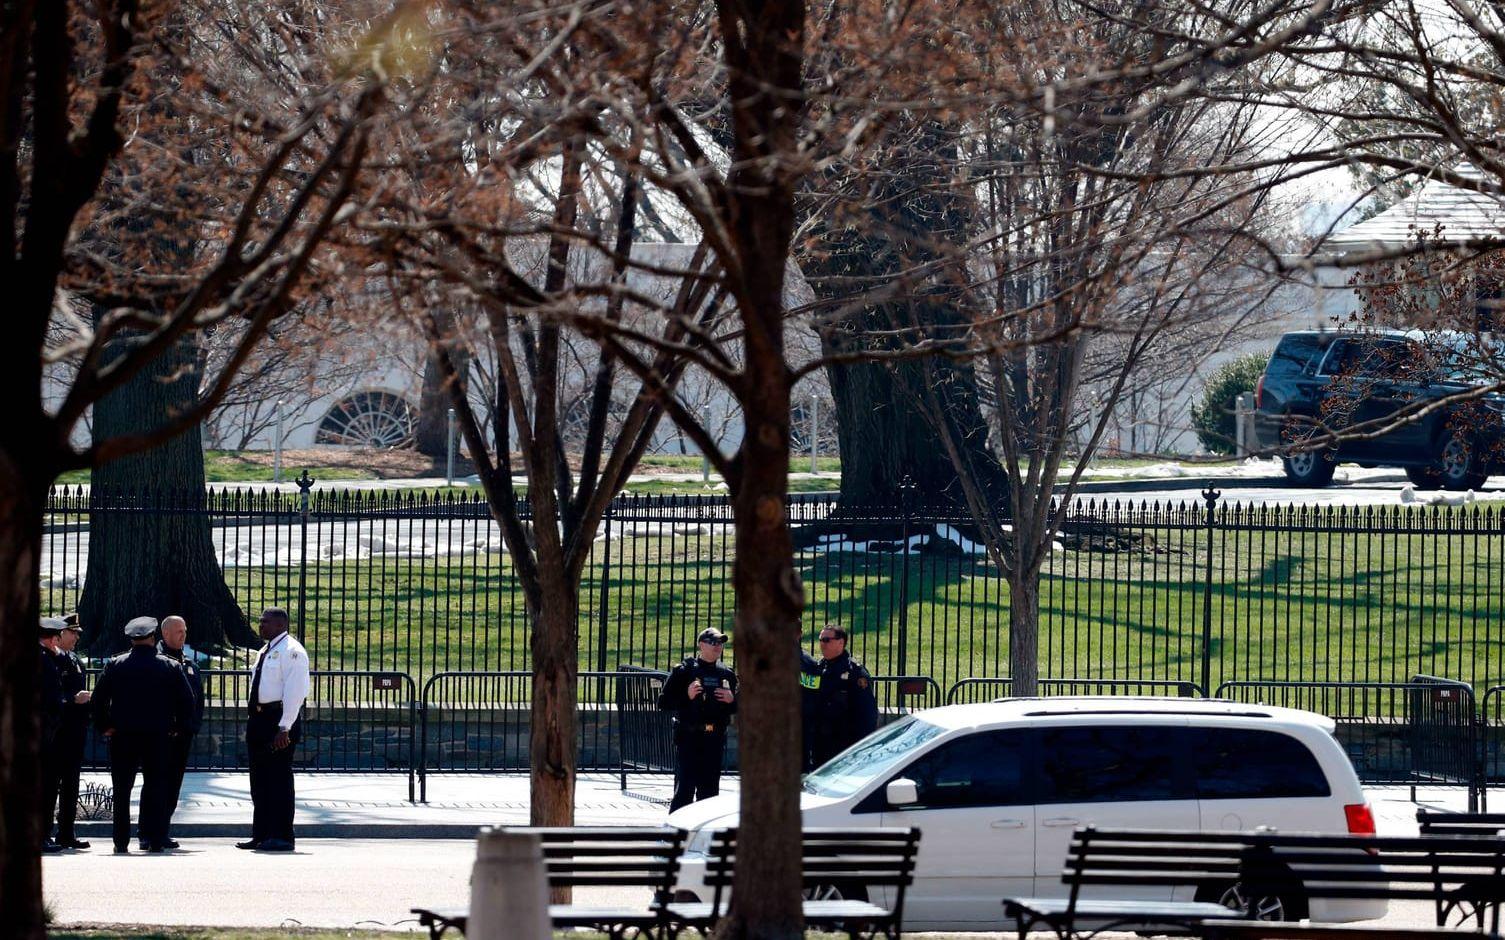 Så sent som den 10 mars lyckades en man ta sig in på Vita husets område i huvudstaden Washington DC. Bild: TT